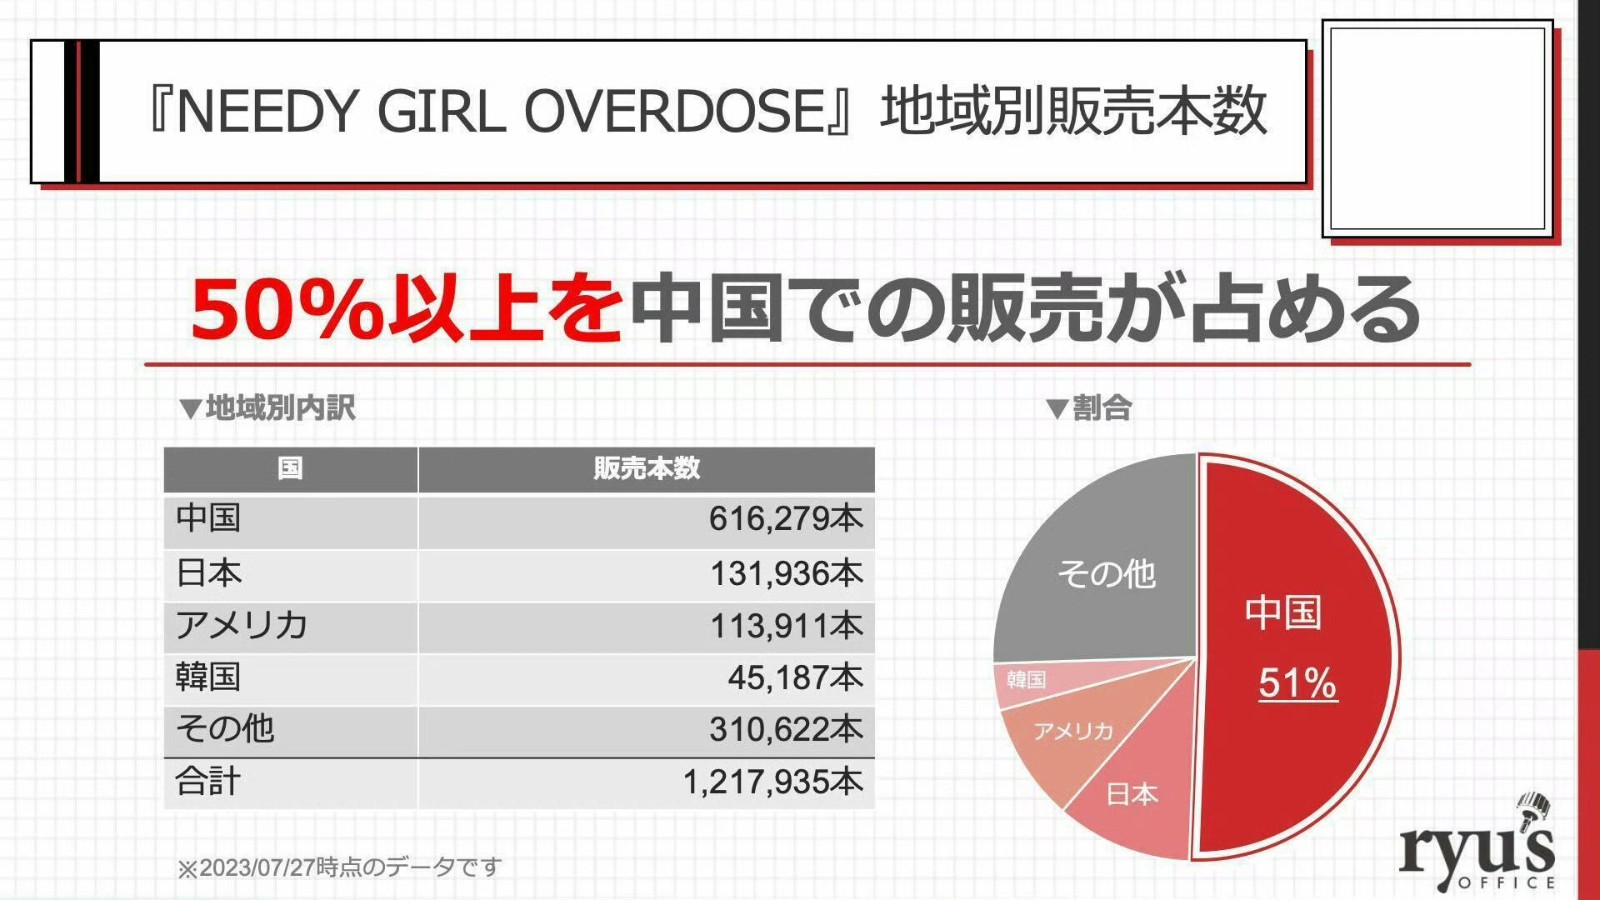 《主播女孩重度依賴》銷量達120萬 過半銷量來自中國